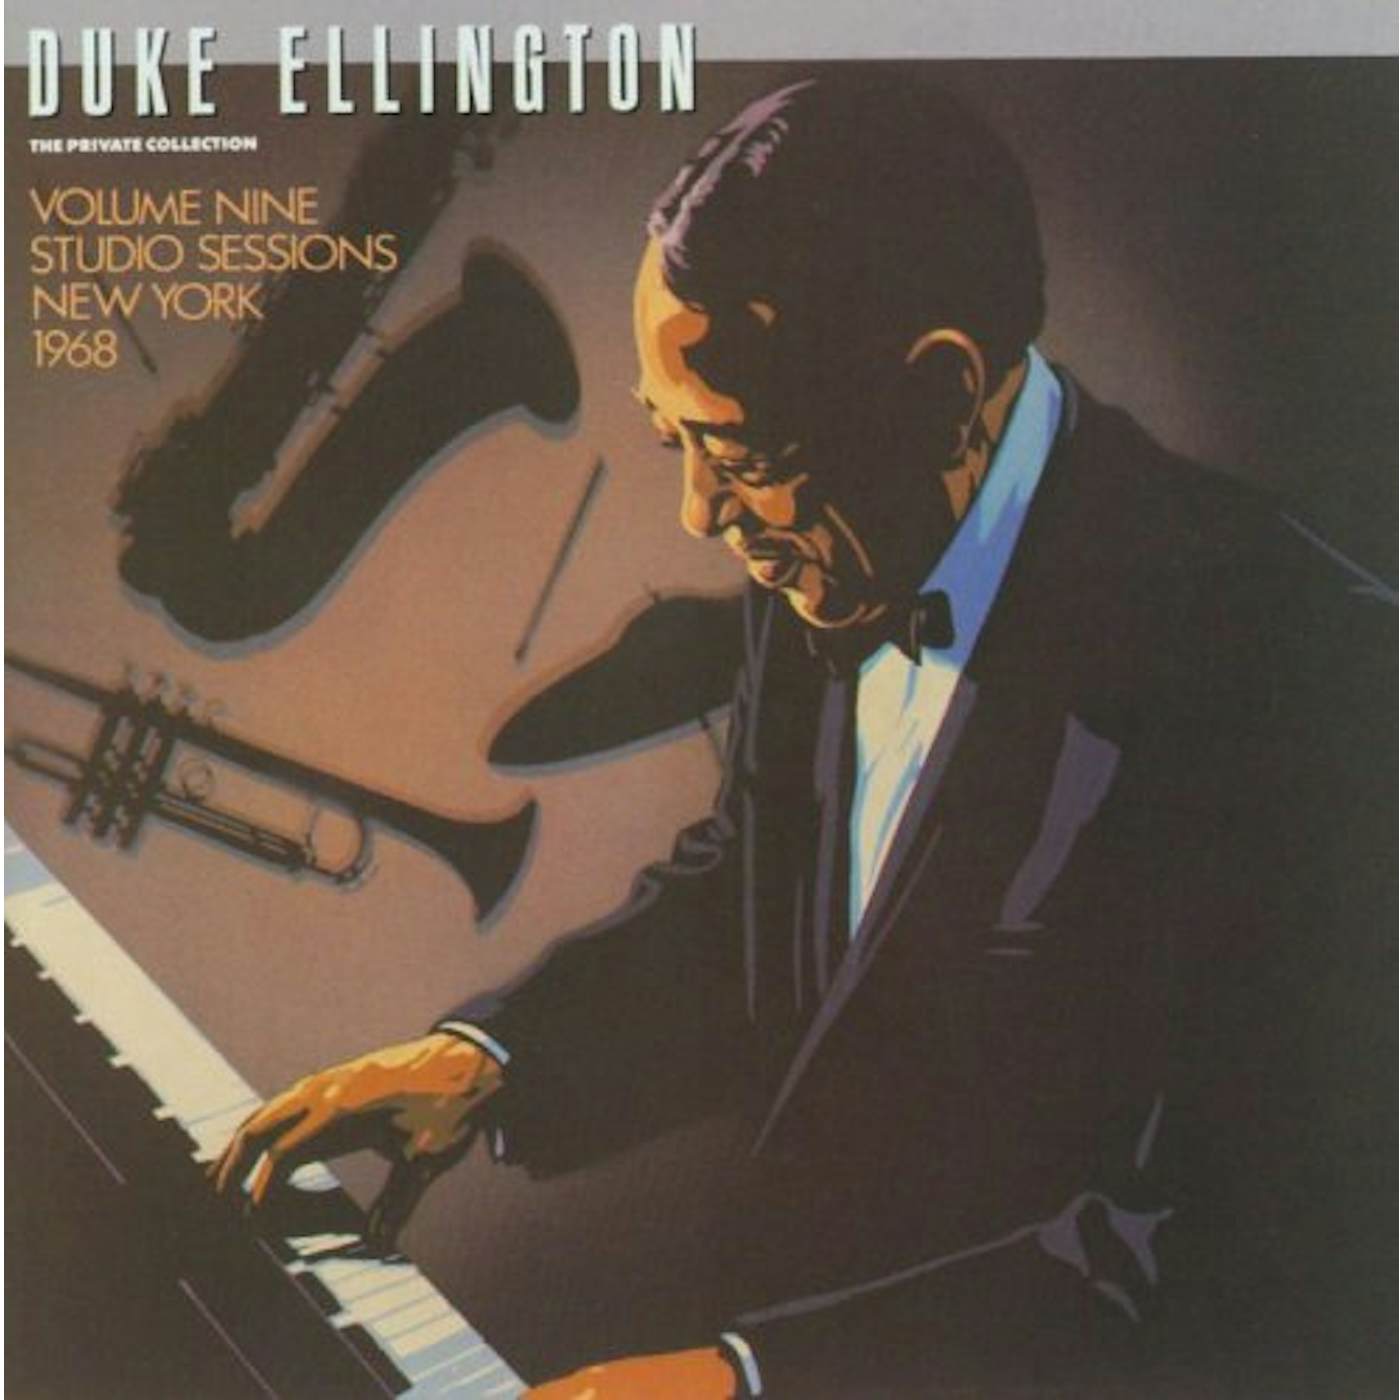 Duke Ellington PRIVATE COLLECTION 9: STUDIO SESSIONS 1968 CD